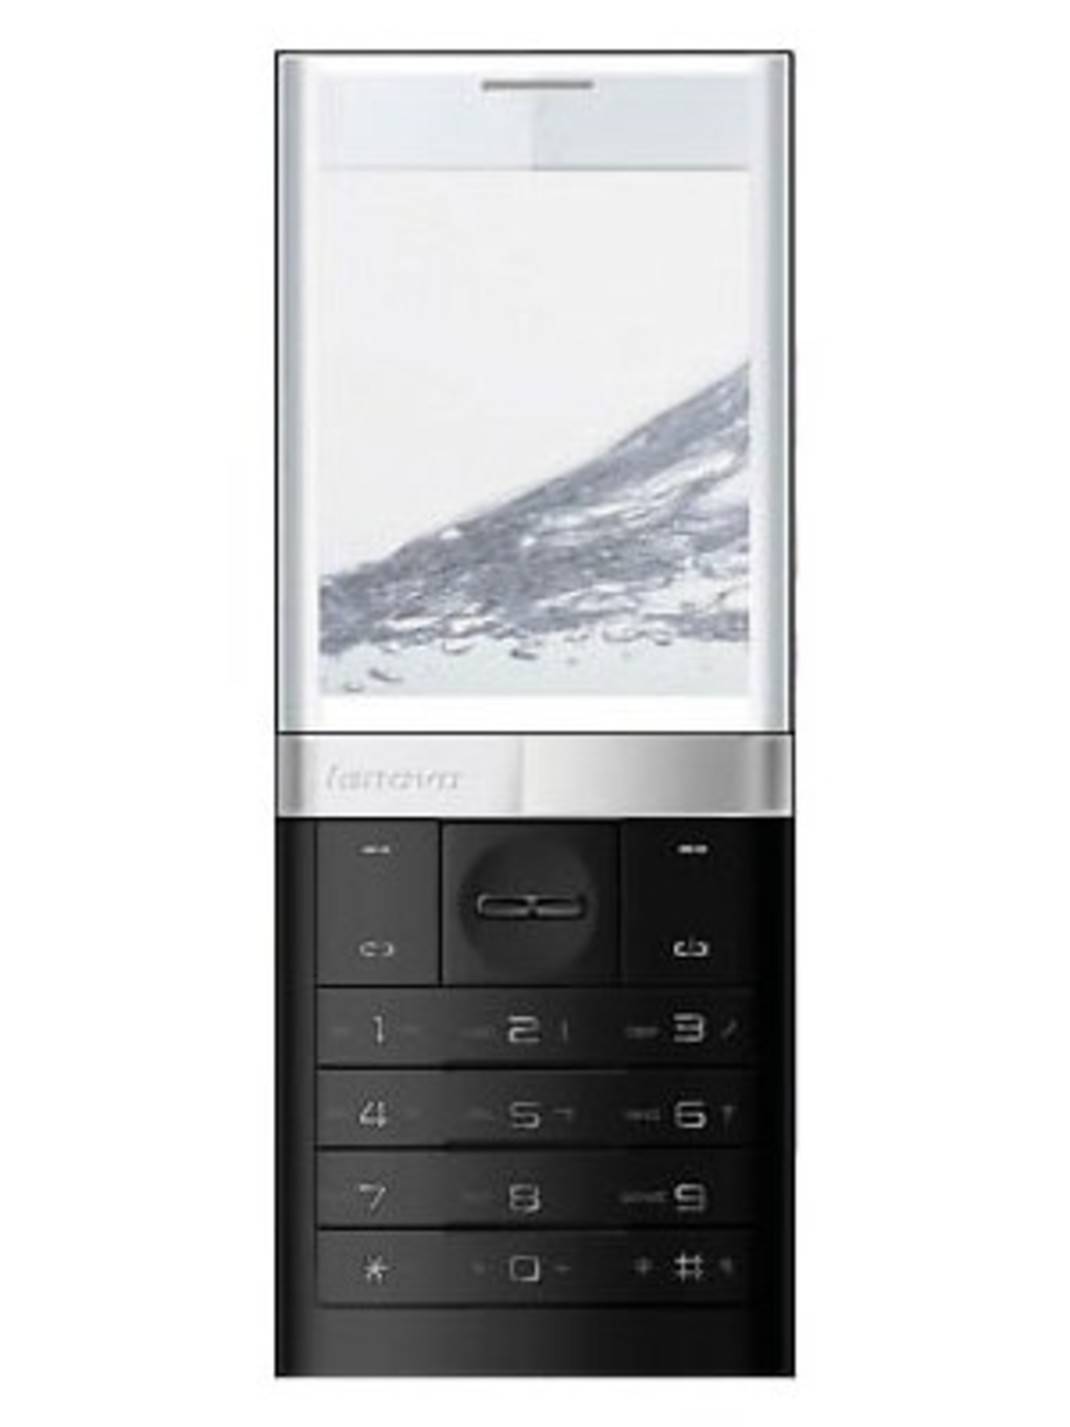 Ericsson xperia pureness. Lenovo s800. Sony Ericsson Xperia Pureness x5. Lenovo s800 2011. Леново с прозрачным экраном.